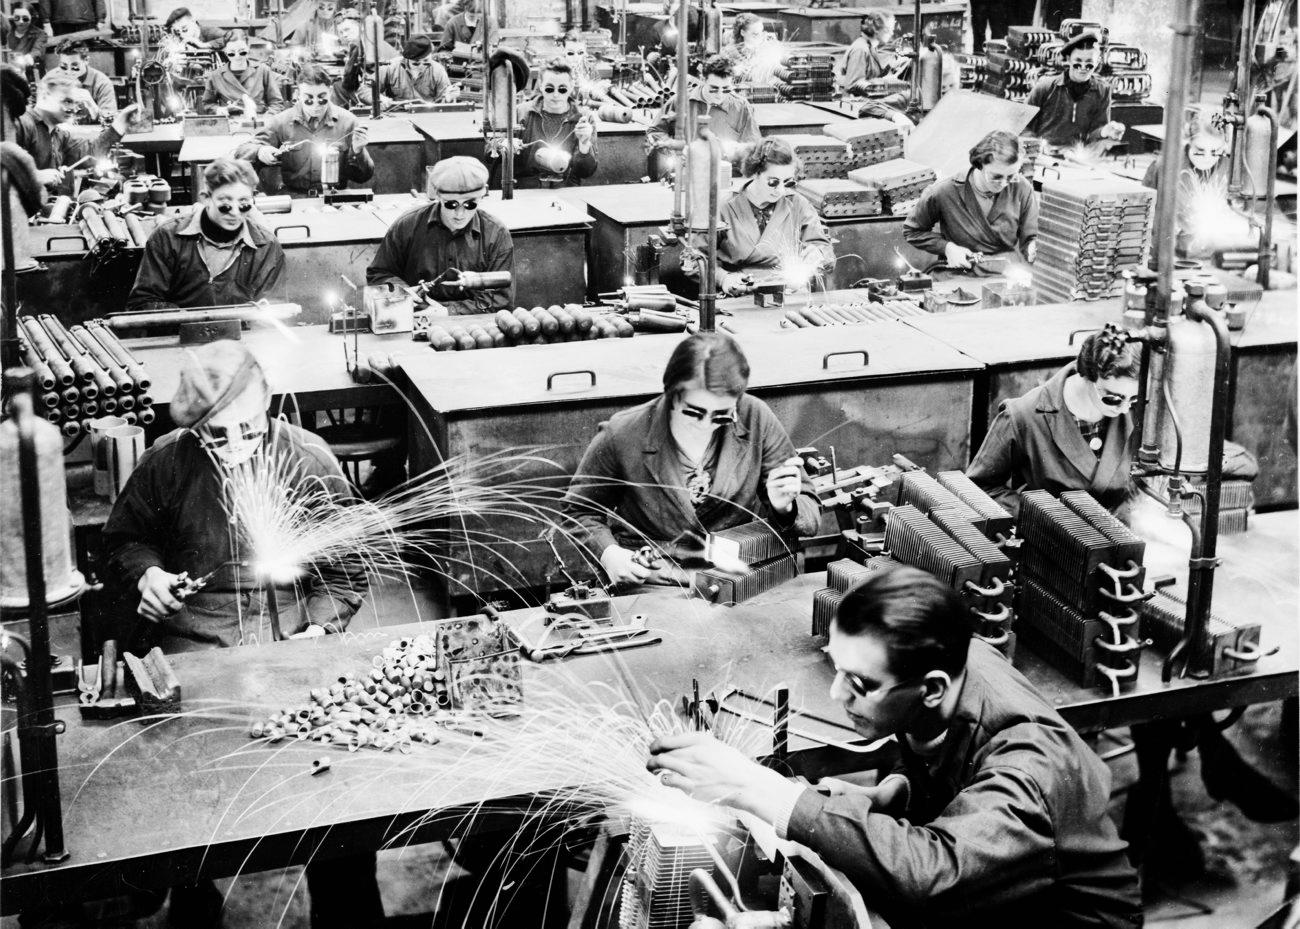 Arbeiterinnen und Arbeiter des Betriebs AB Electrolux, Motala, 1947.